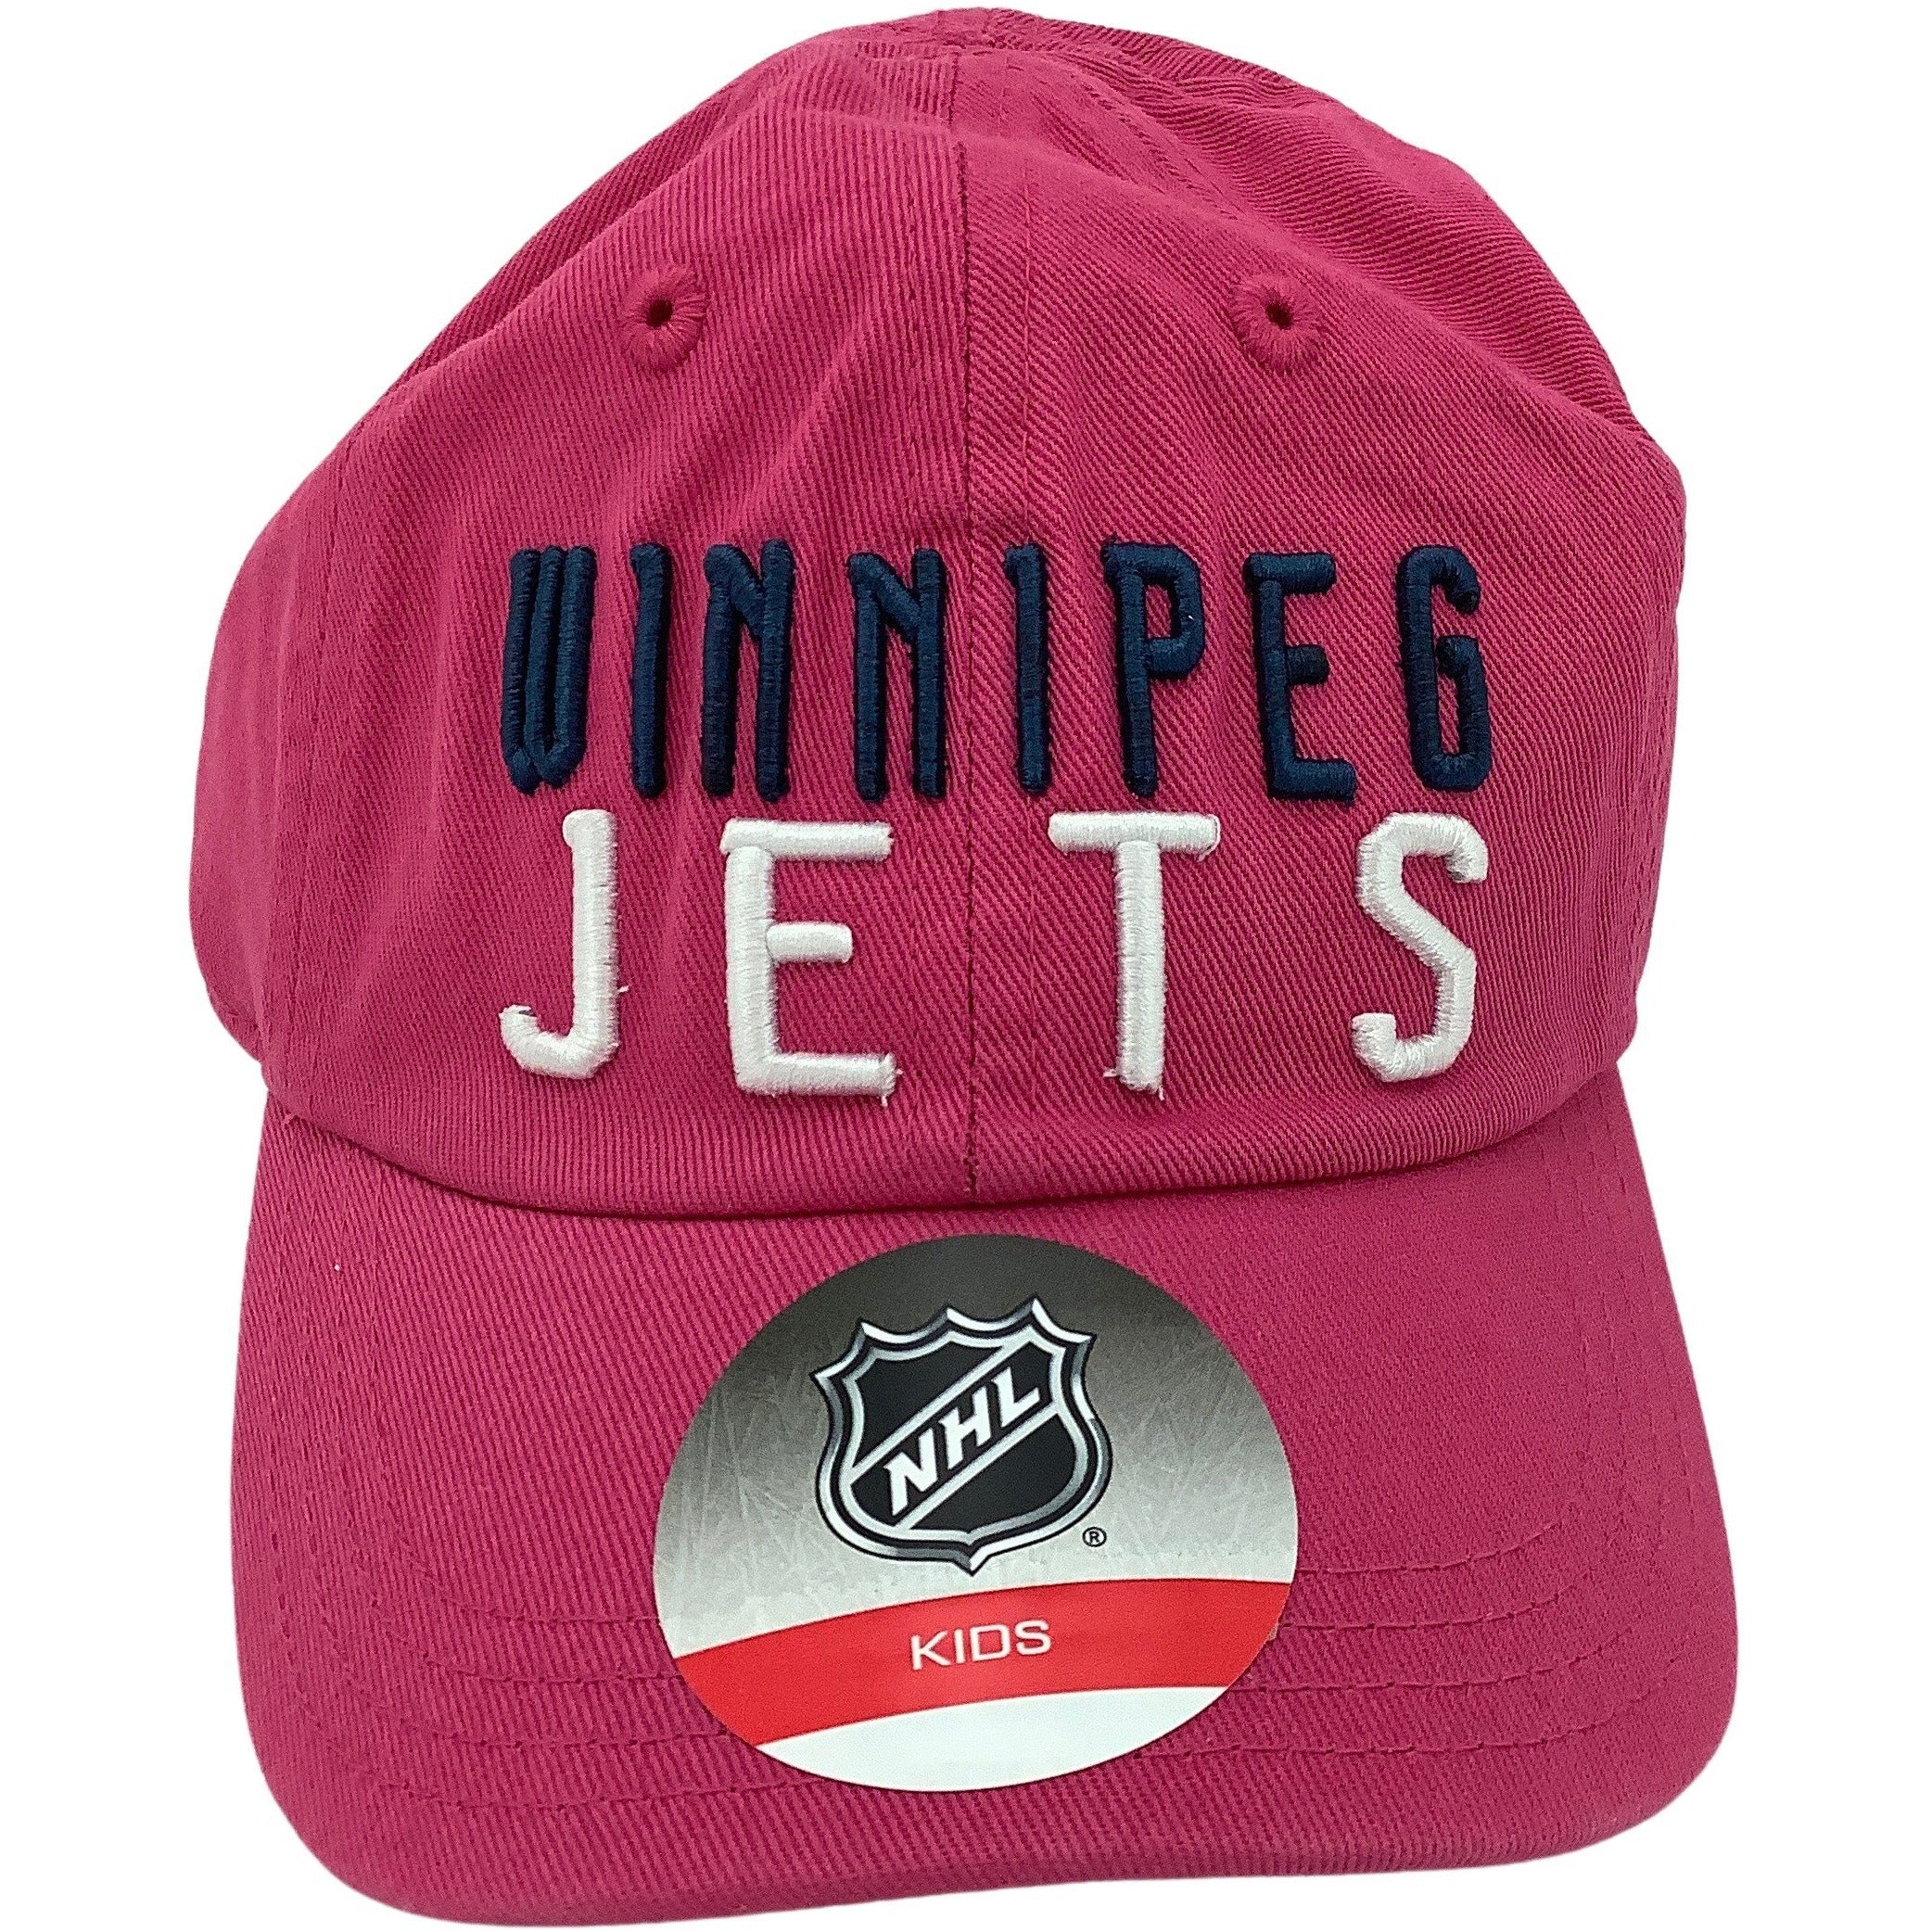 Winnipeg Jets Kids Baseball Cap: My First Cap: Pink